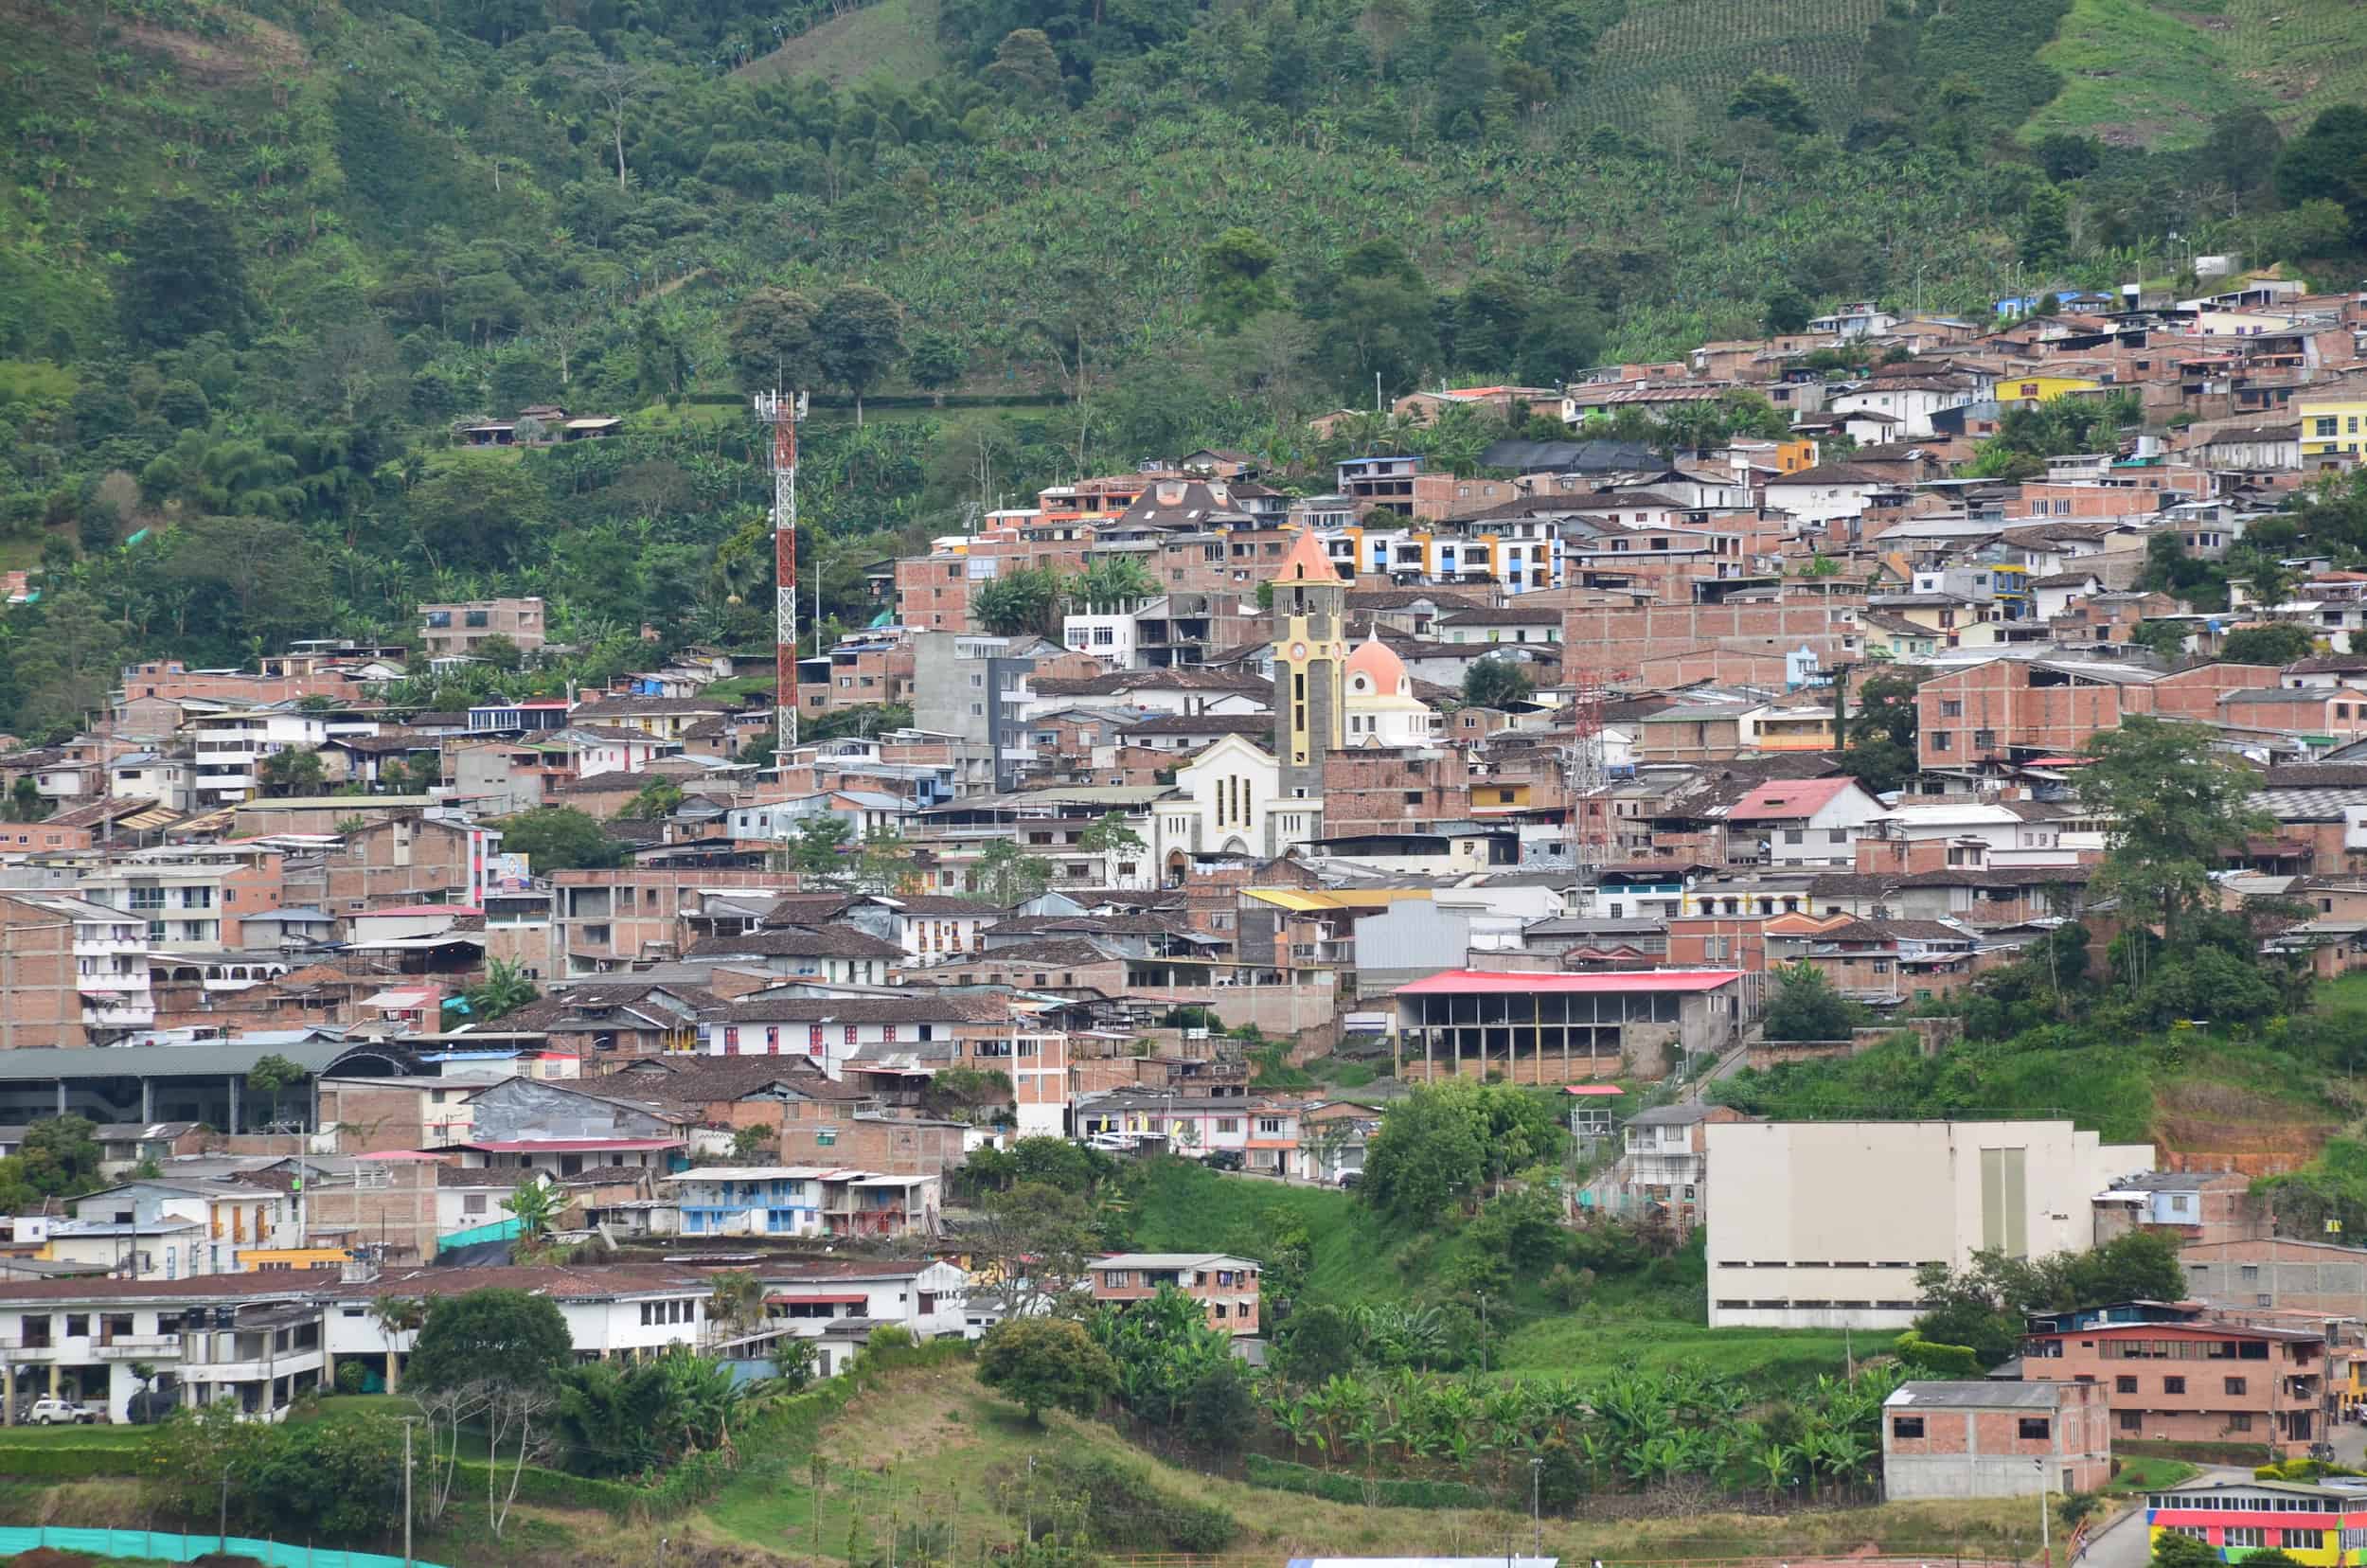 View of Belén de Umbría at Mirador Las Veraneras in Belén de Umbría, Risaralda, Colombia